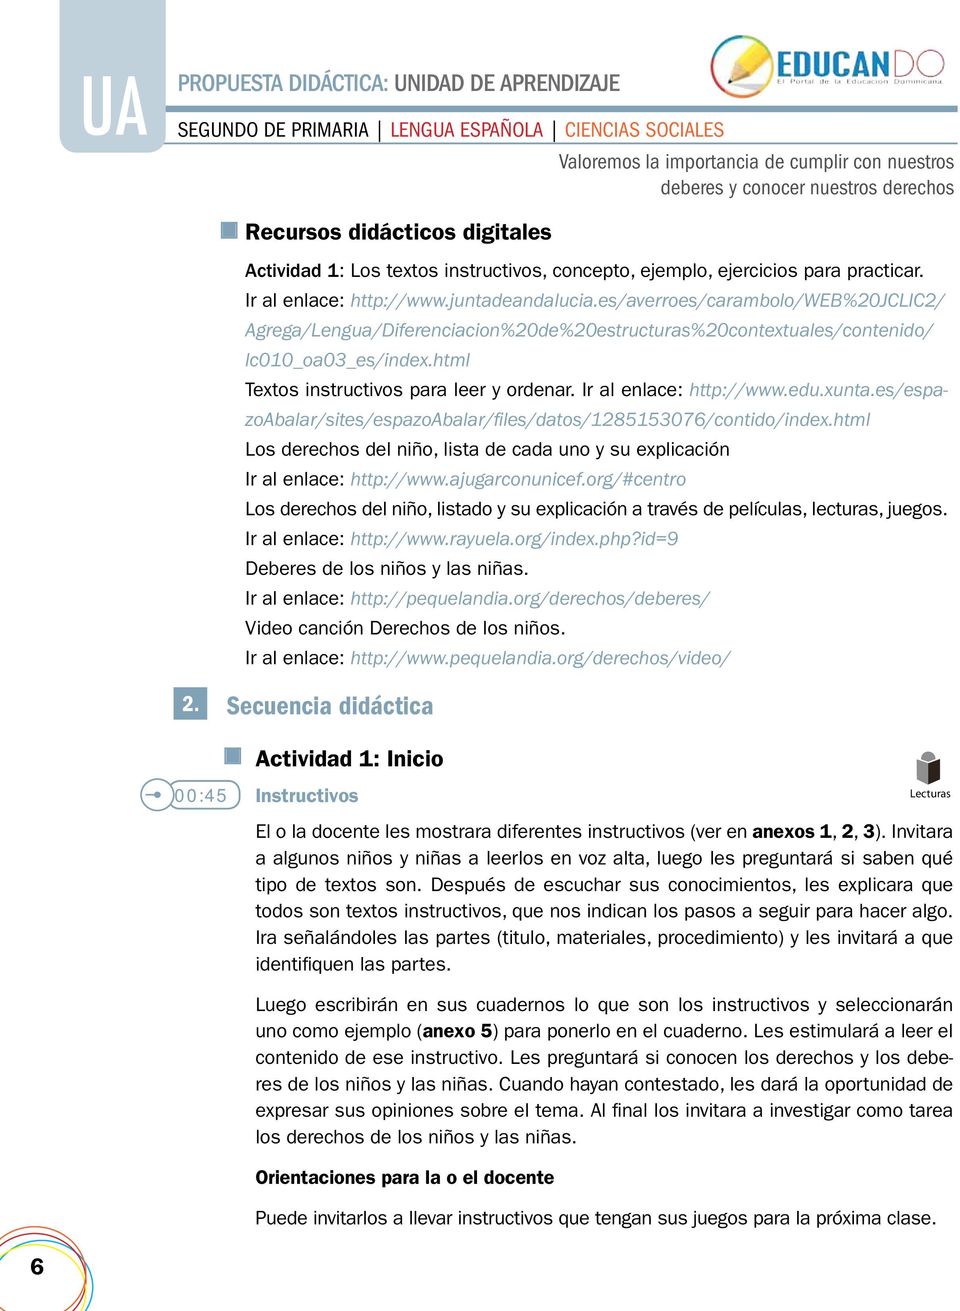 Ir al enlace: http://www.edu.xunta.es/espazoabalar/sites/espazoabalar/files/datos/1285153076/contido/index.html Los derechos del niño, lista de cada uno y su explicación Ir al enlace: http://www.